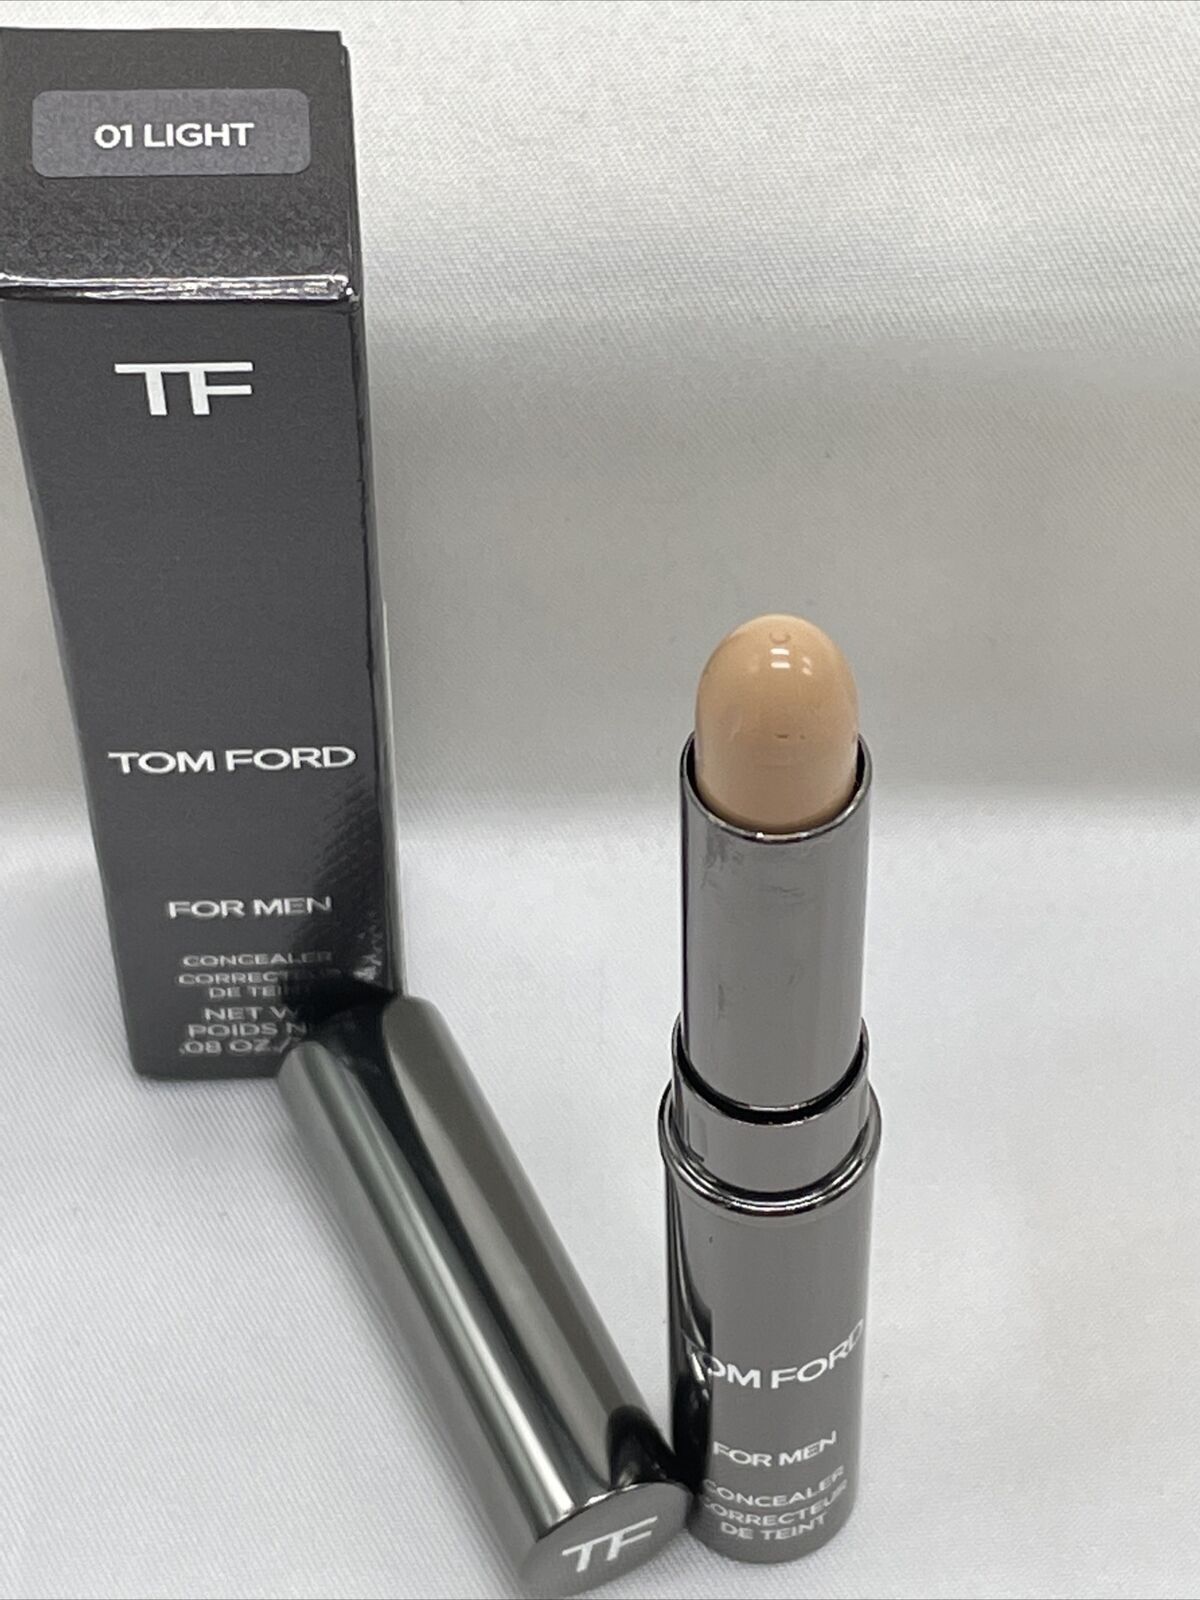 Tom Ford For Men Concealer 01 LIGHT  oz /  g New In Box 888066029735  | eBay